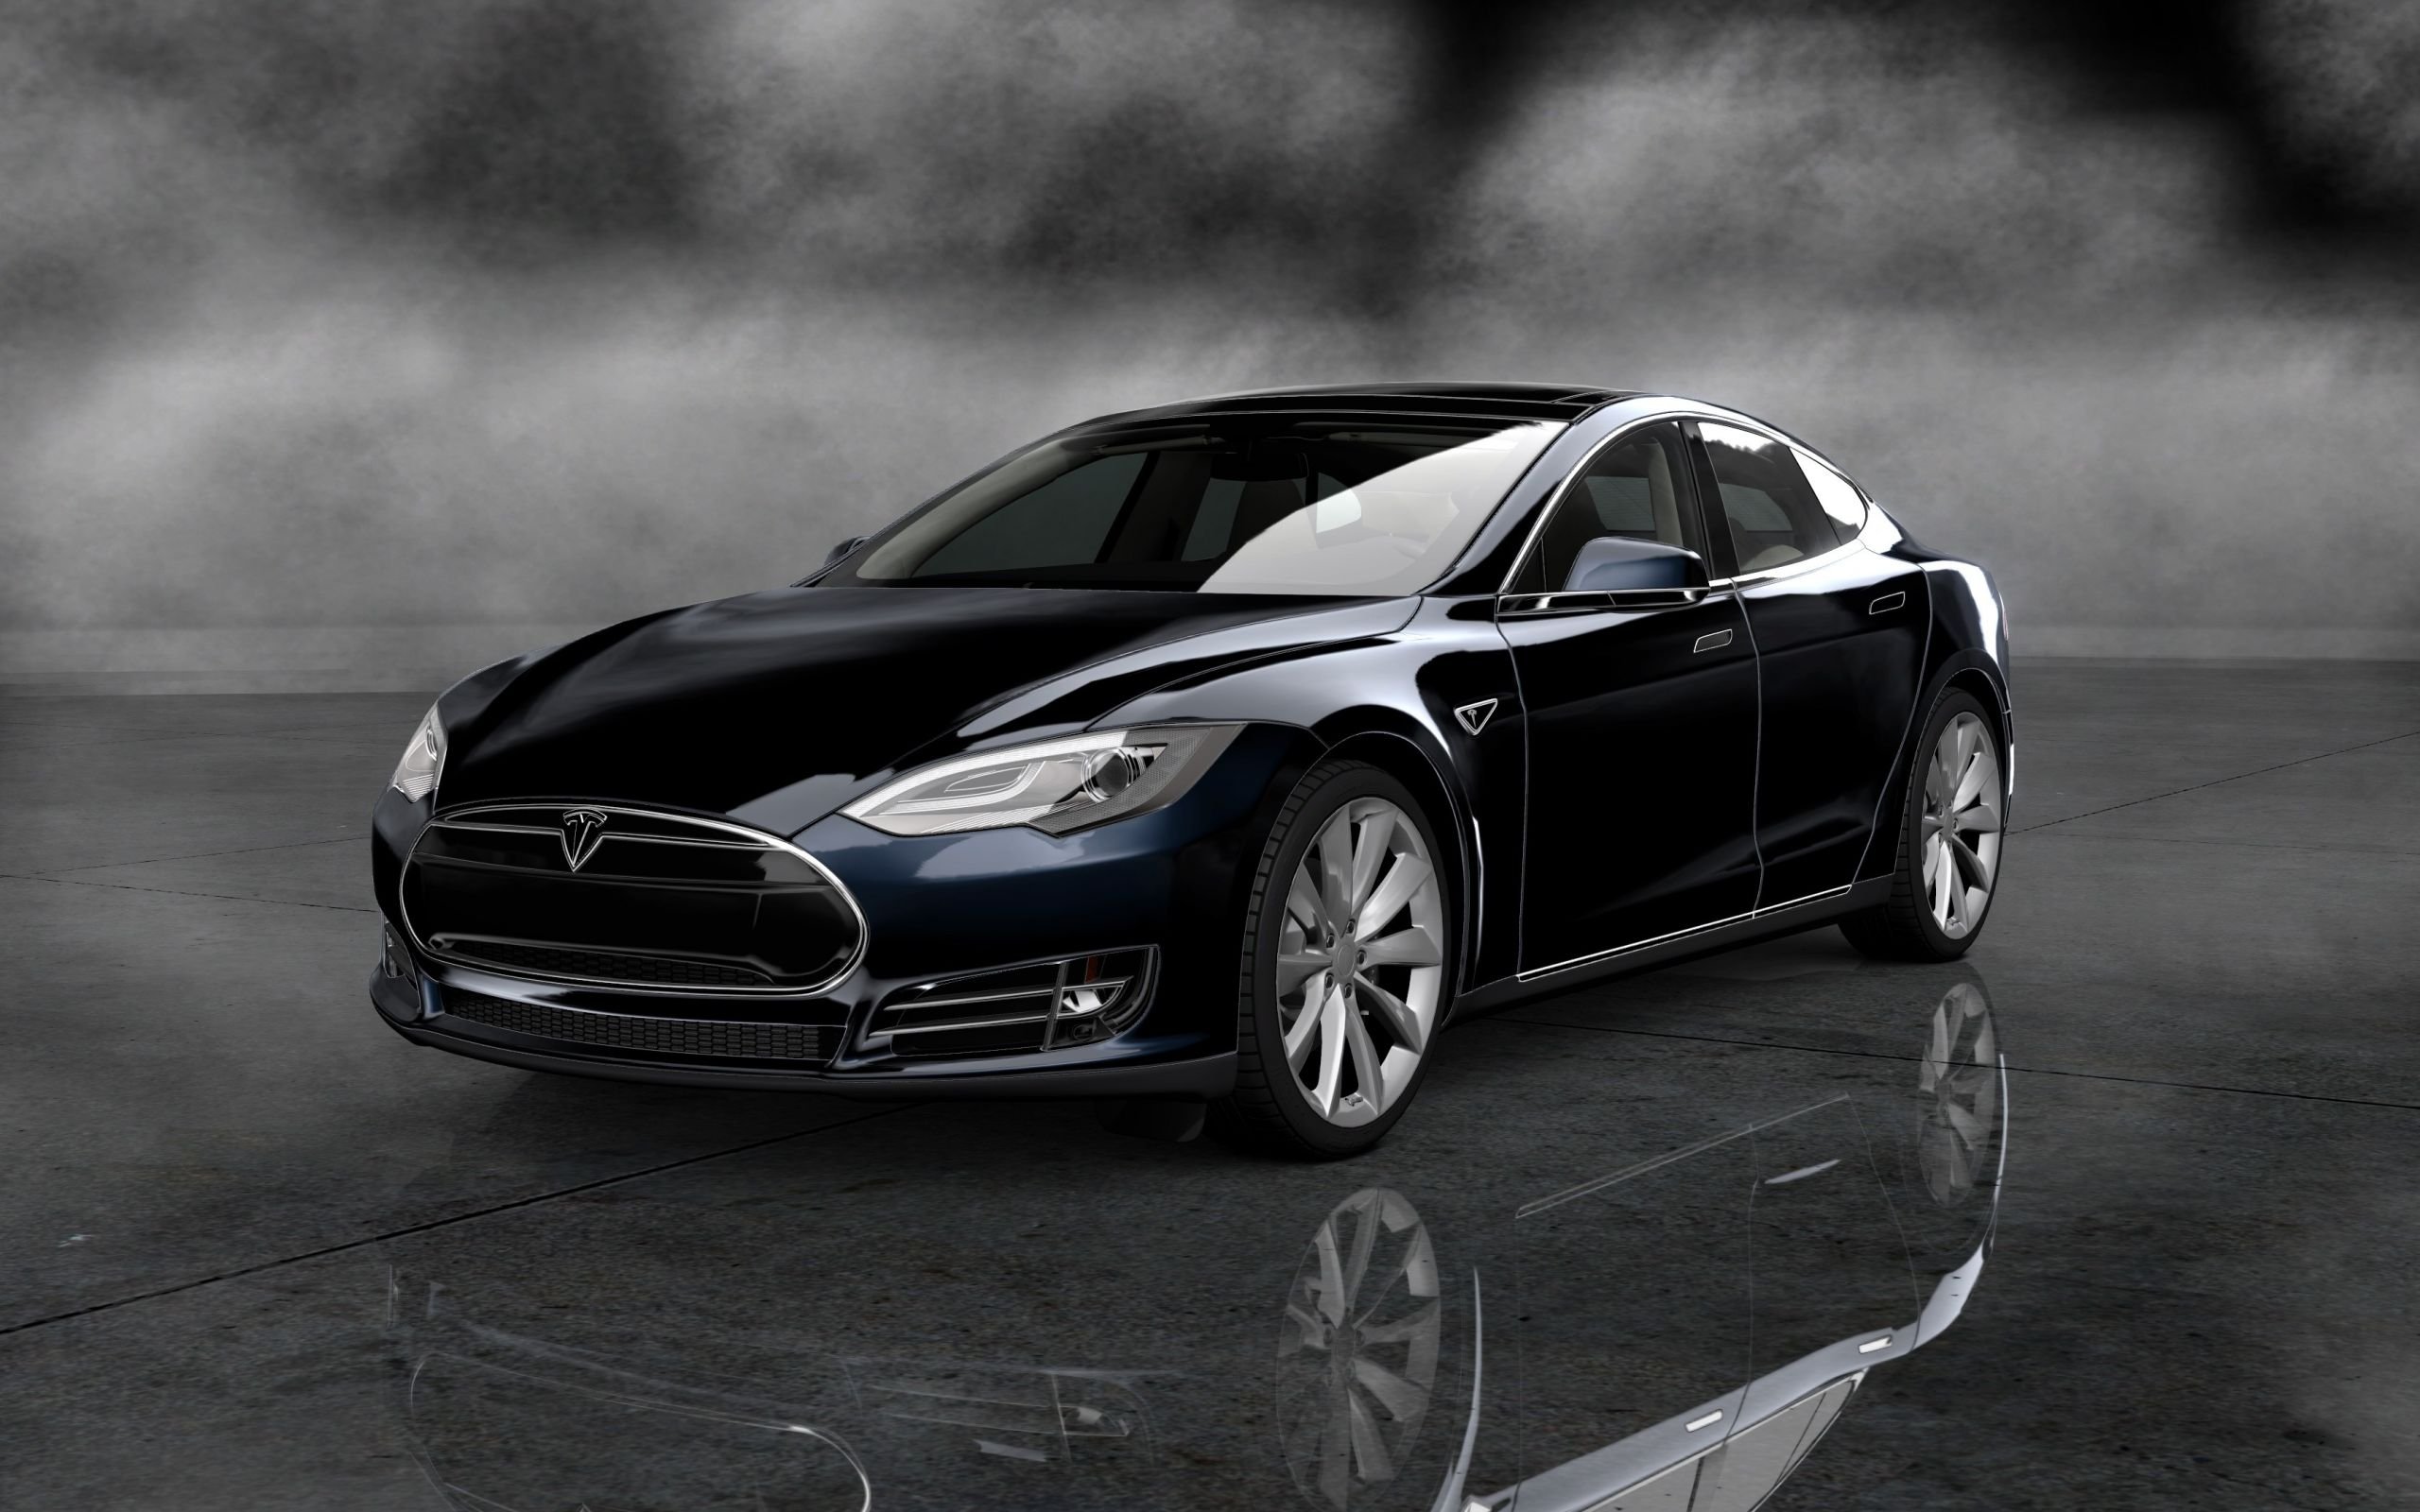 Tesla model s Black. Tesla model 6s. Машина Tesla model s чëрный. Тесла модель s черная. Модель s автомобиль